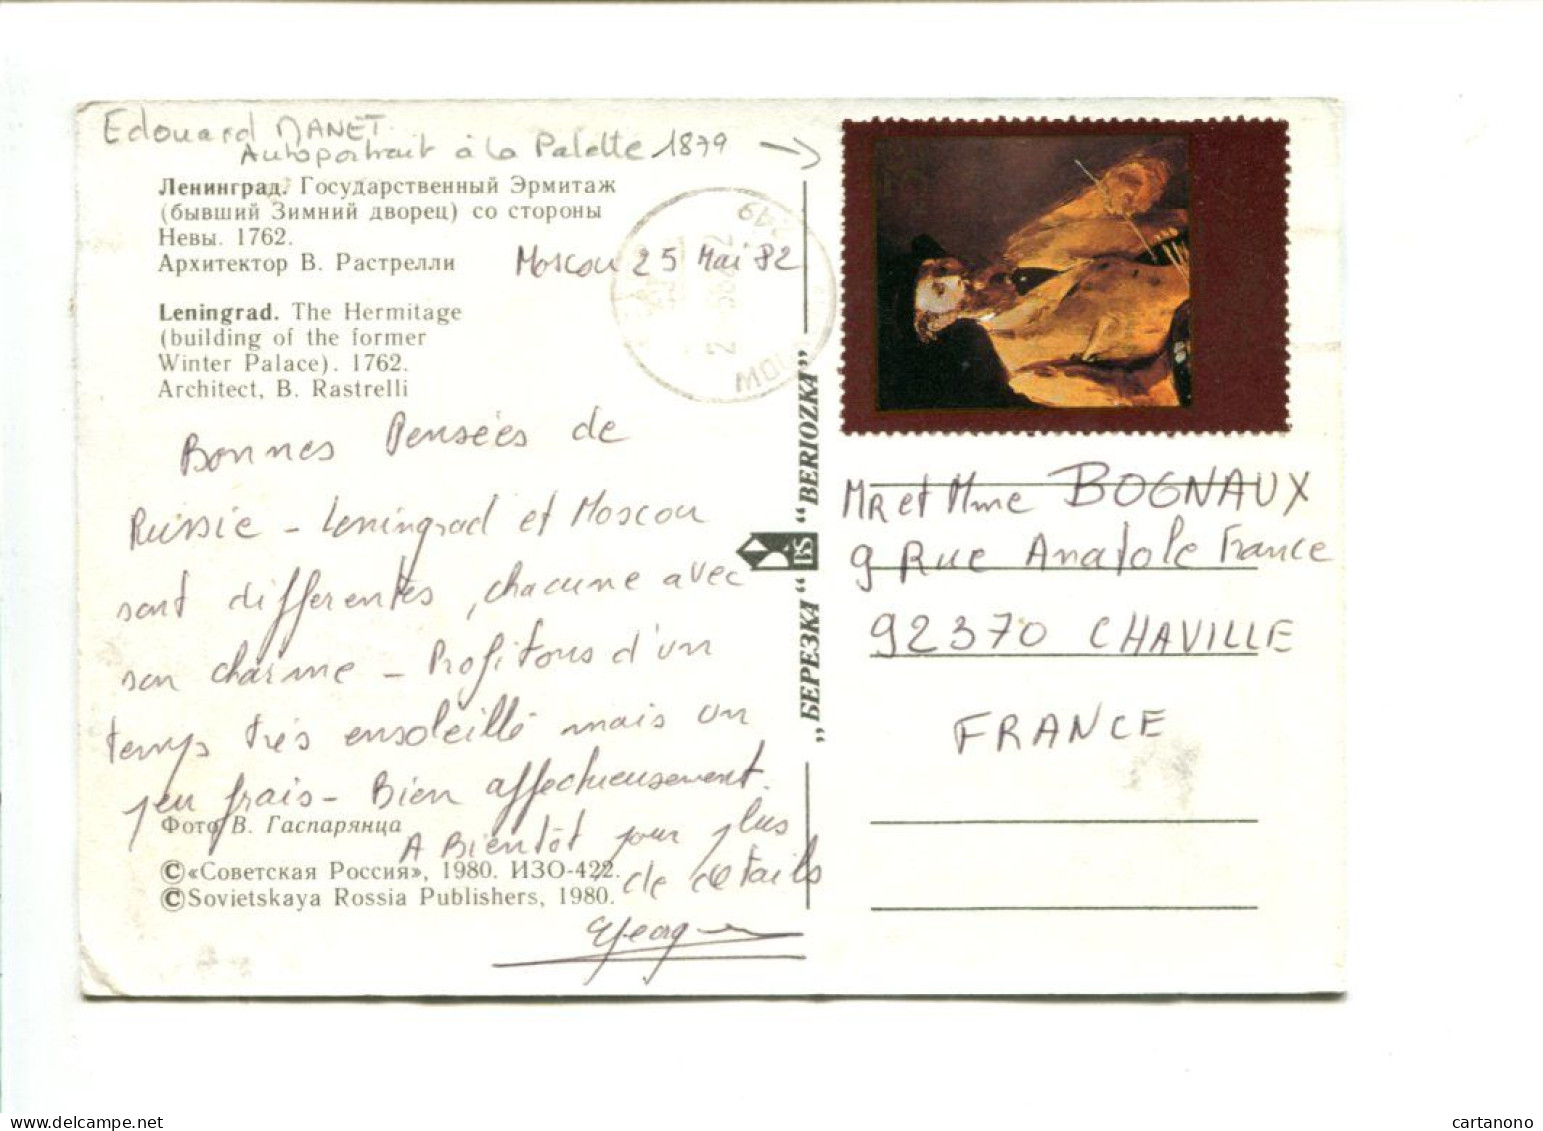 URSS - Affranchissement Sur Carte Postale Du Musée De L'Hermitage - Autoportrait D'Edouard MANET - Impressionismo